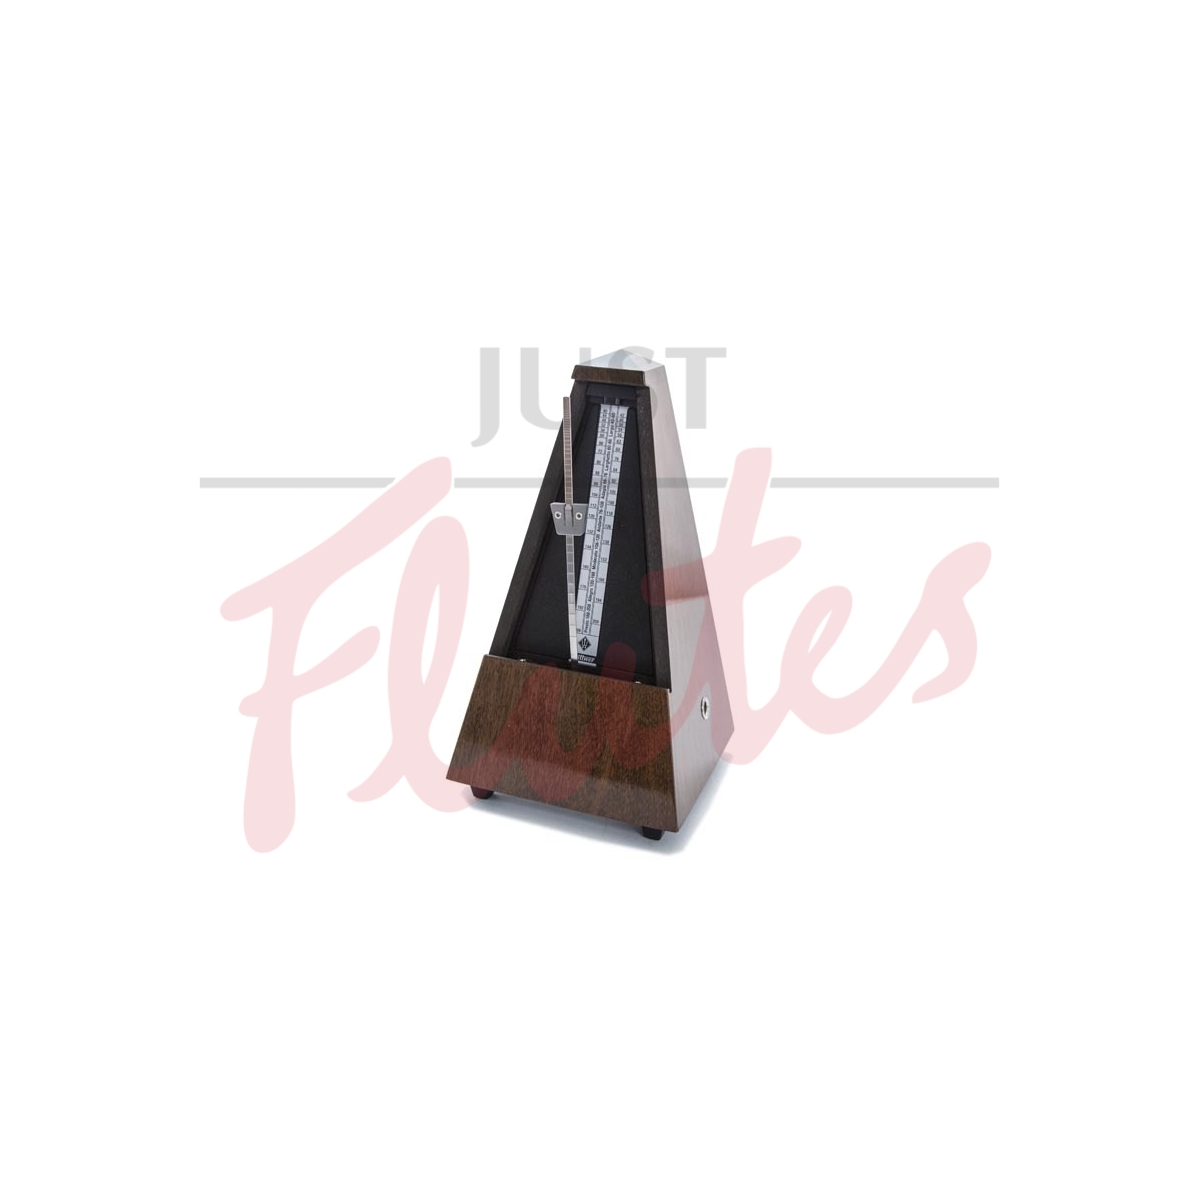 Wittner 803 Pyramid Metronome, Wood, Highly Polished Walnut Finish